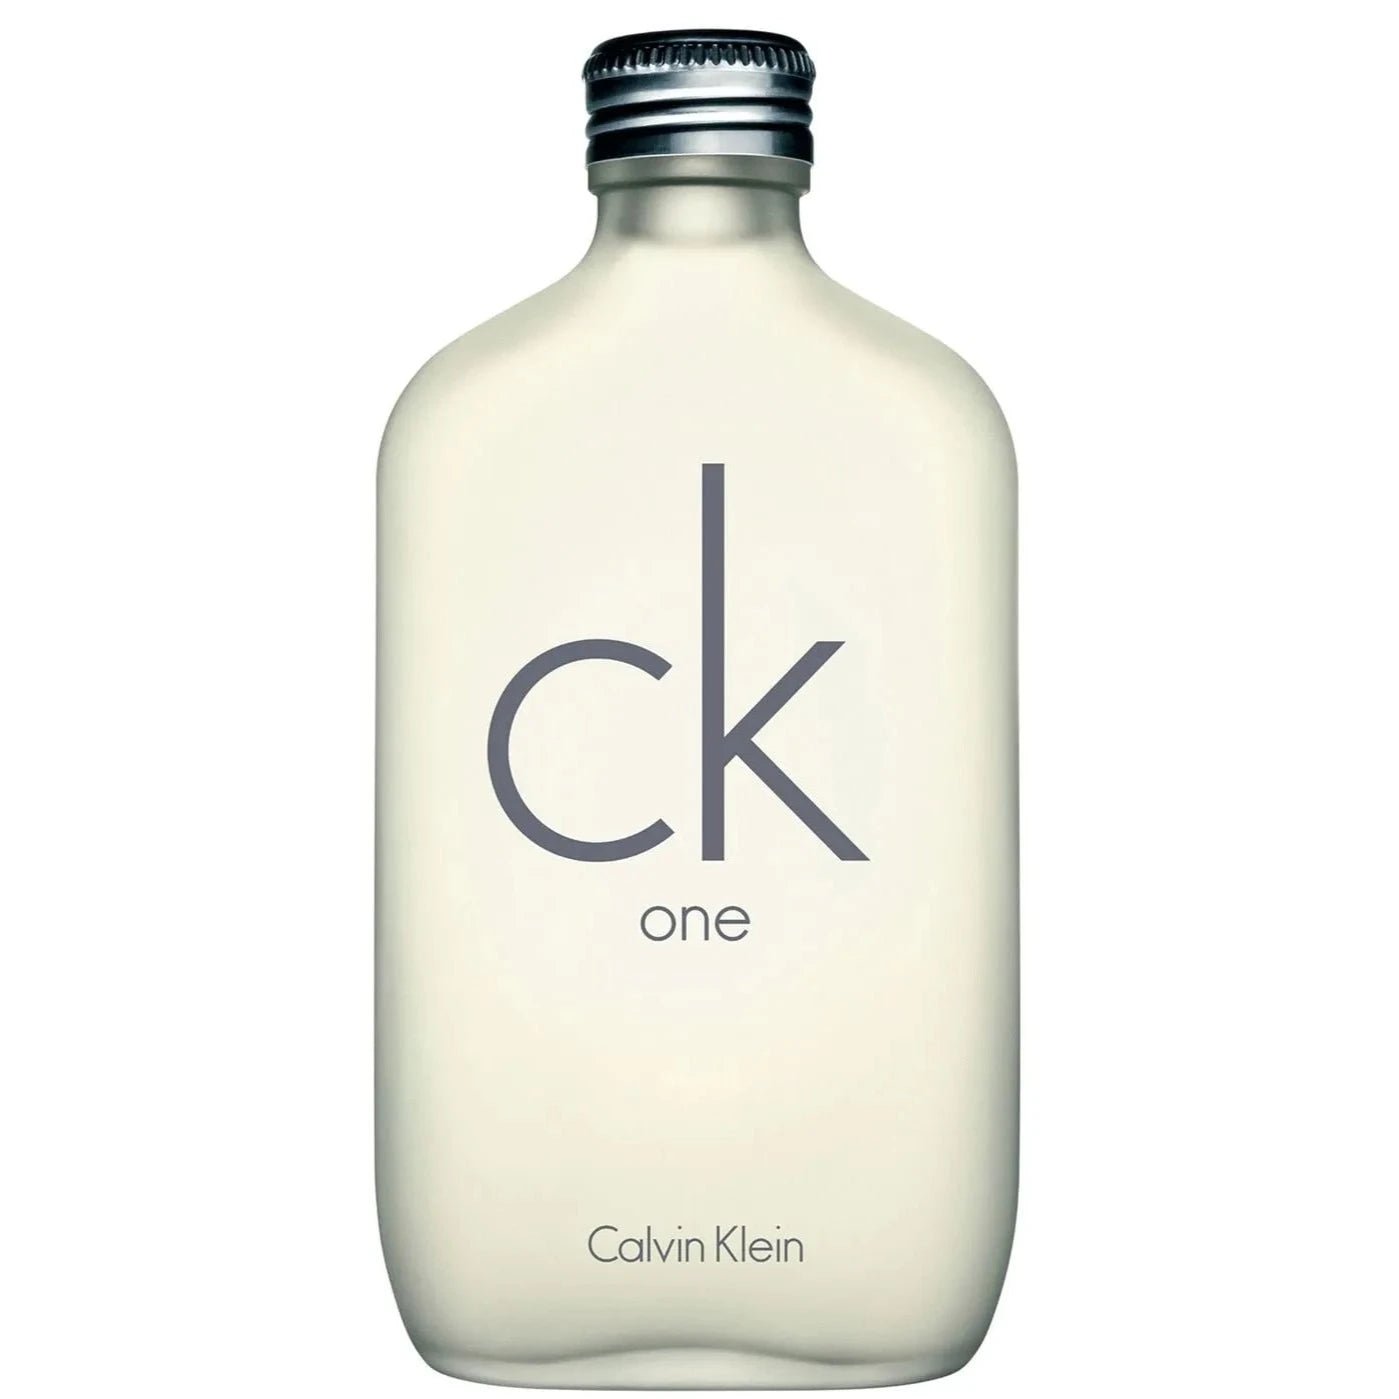 Calvin Klein CK One Essentials Set | My Perfume Shop Australia